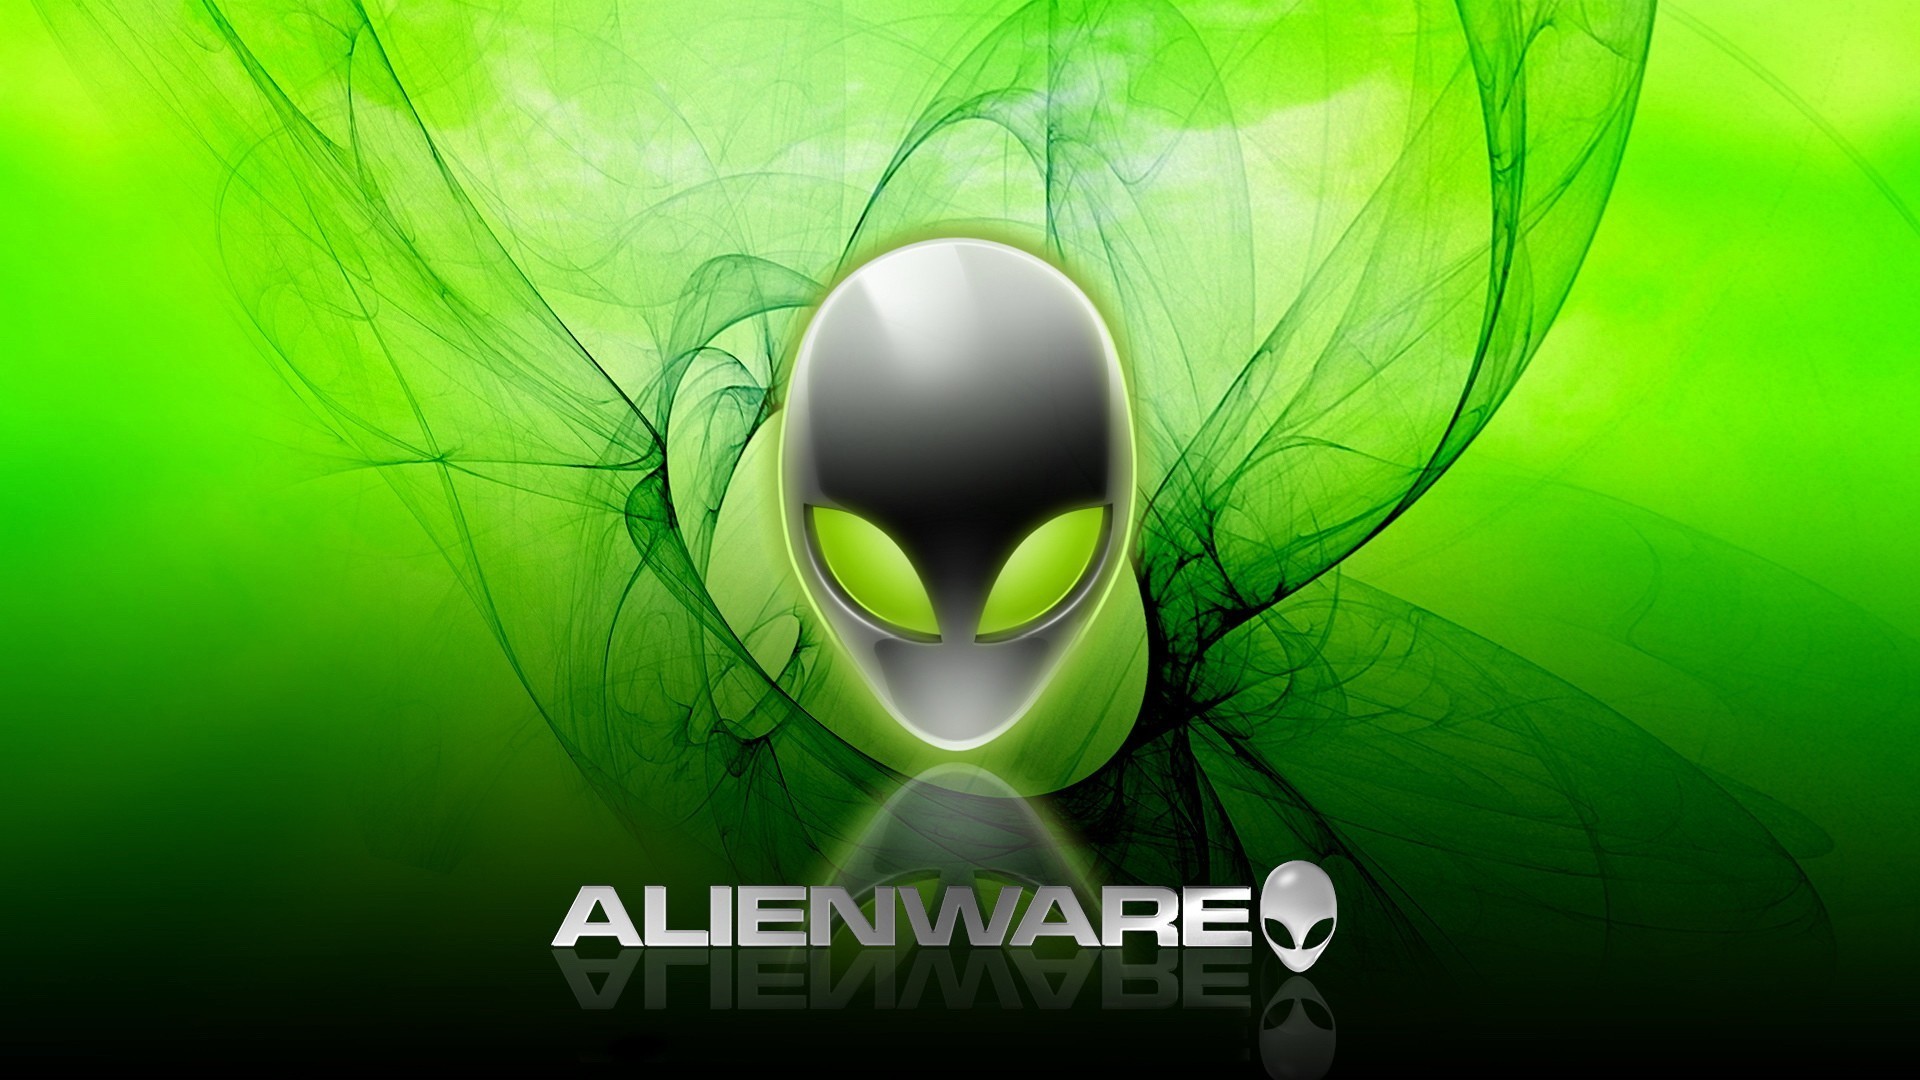 Alienware Wallpaper Hd , HD Wallpaper & Backgrounds